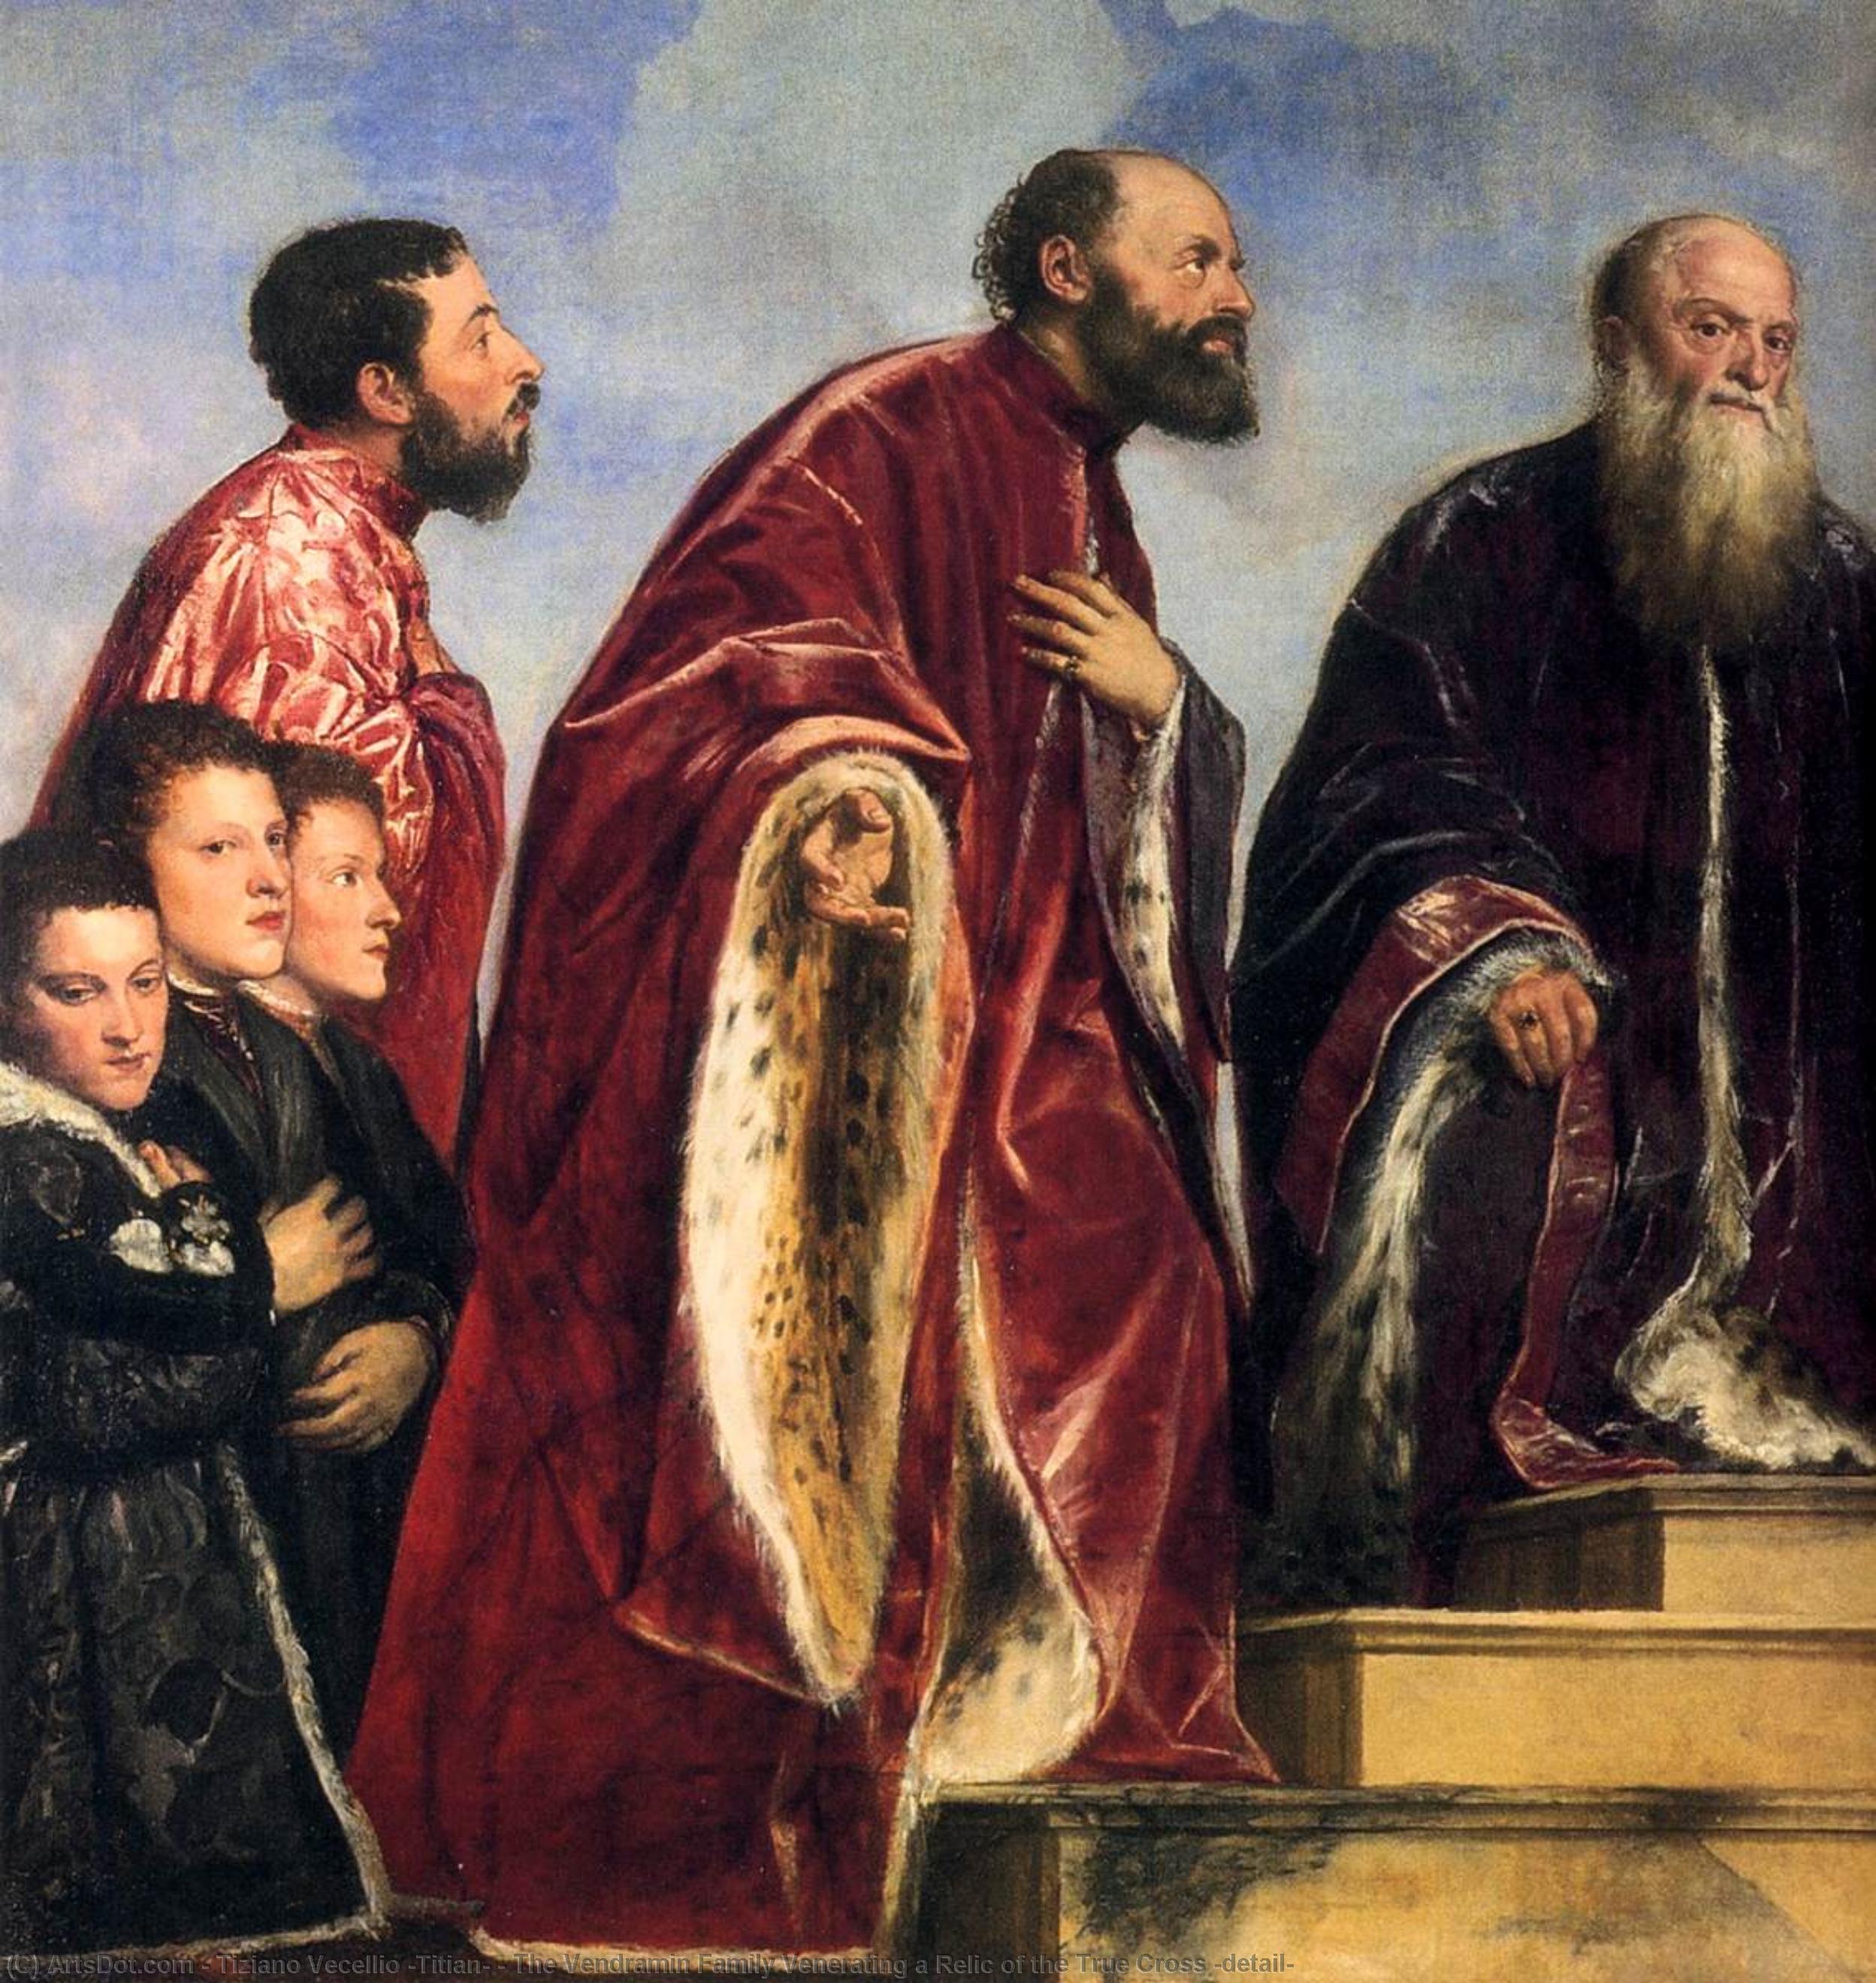 Wikioo.org - Bách khoa toàn thư về mỹ thuật - Vẽ tranh, Tác phẩm nghệ thuật Tiziano Vecellio (Titian) - The Vendramin Family Venerating a Relic of the True Cross (detail)